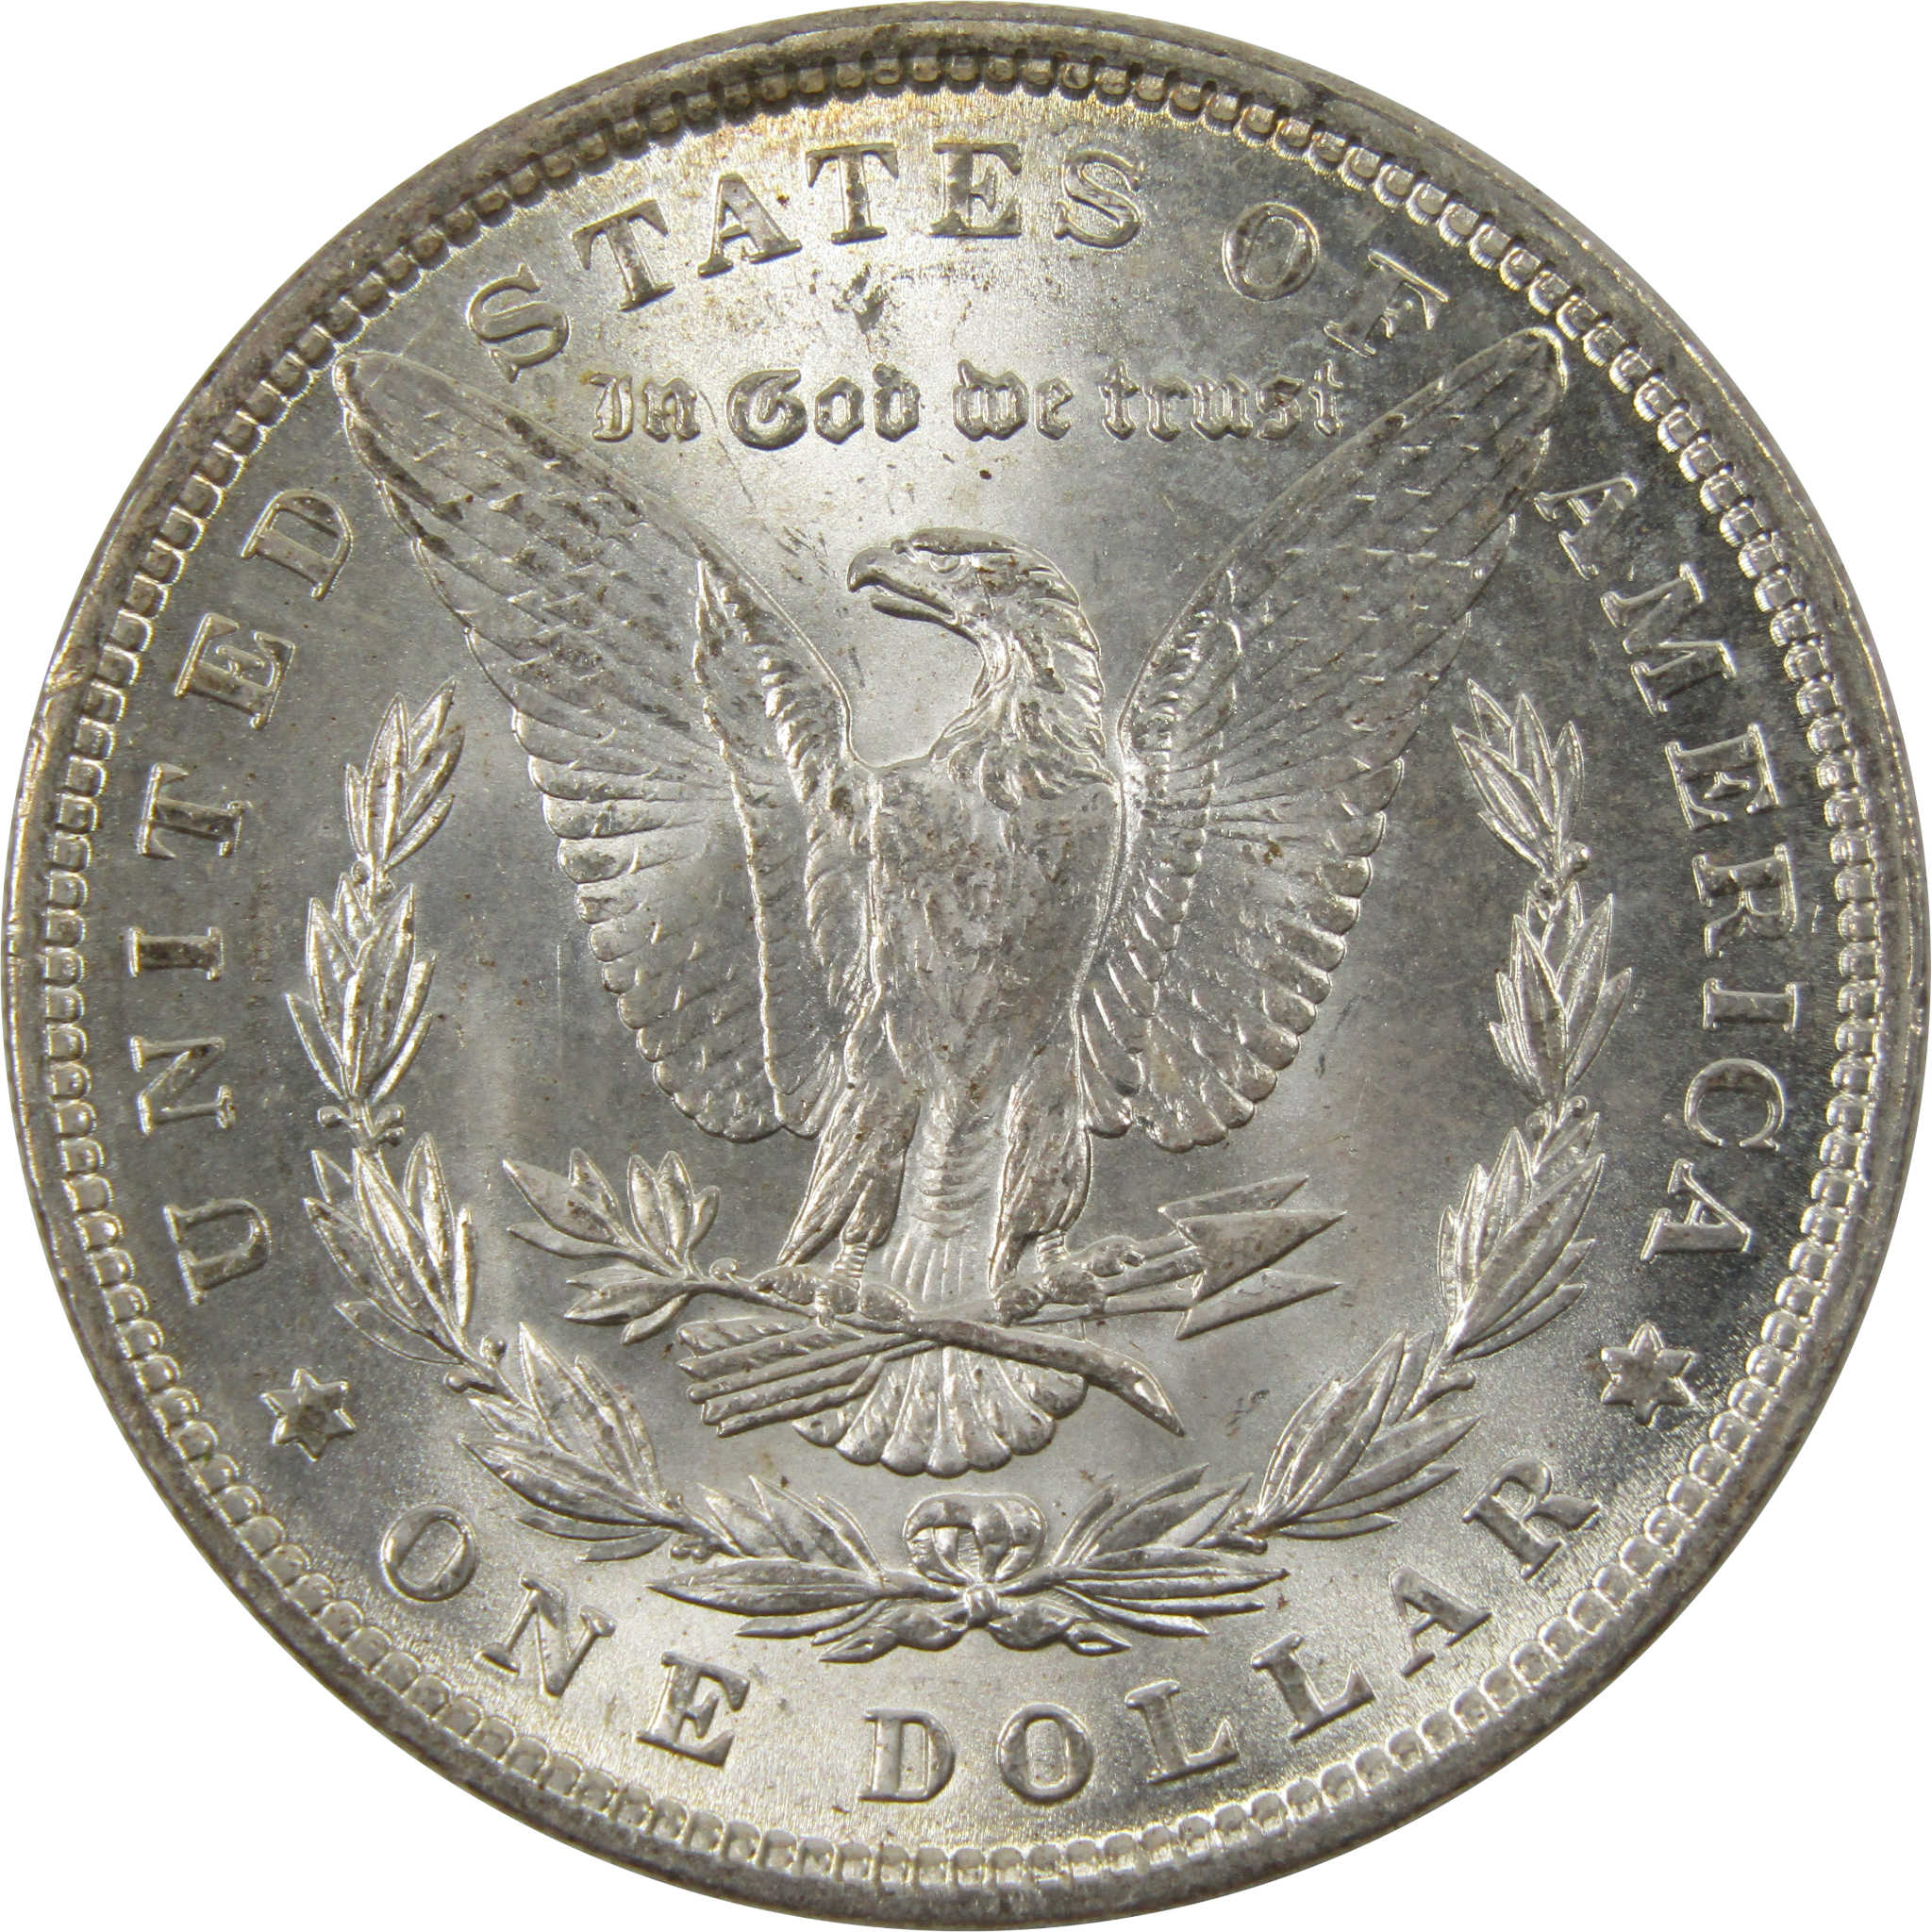 1890 Morgan Dollar BU Uncirculated 90% Silver $1 Coin SKU:I9876 - Morgan coin - Morgan silver dollar - Morgan silver dollar for sale - Profile Coins &amp; Collectibles